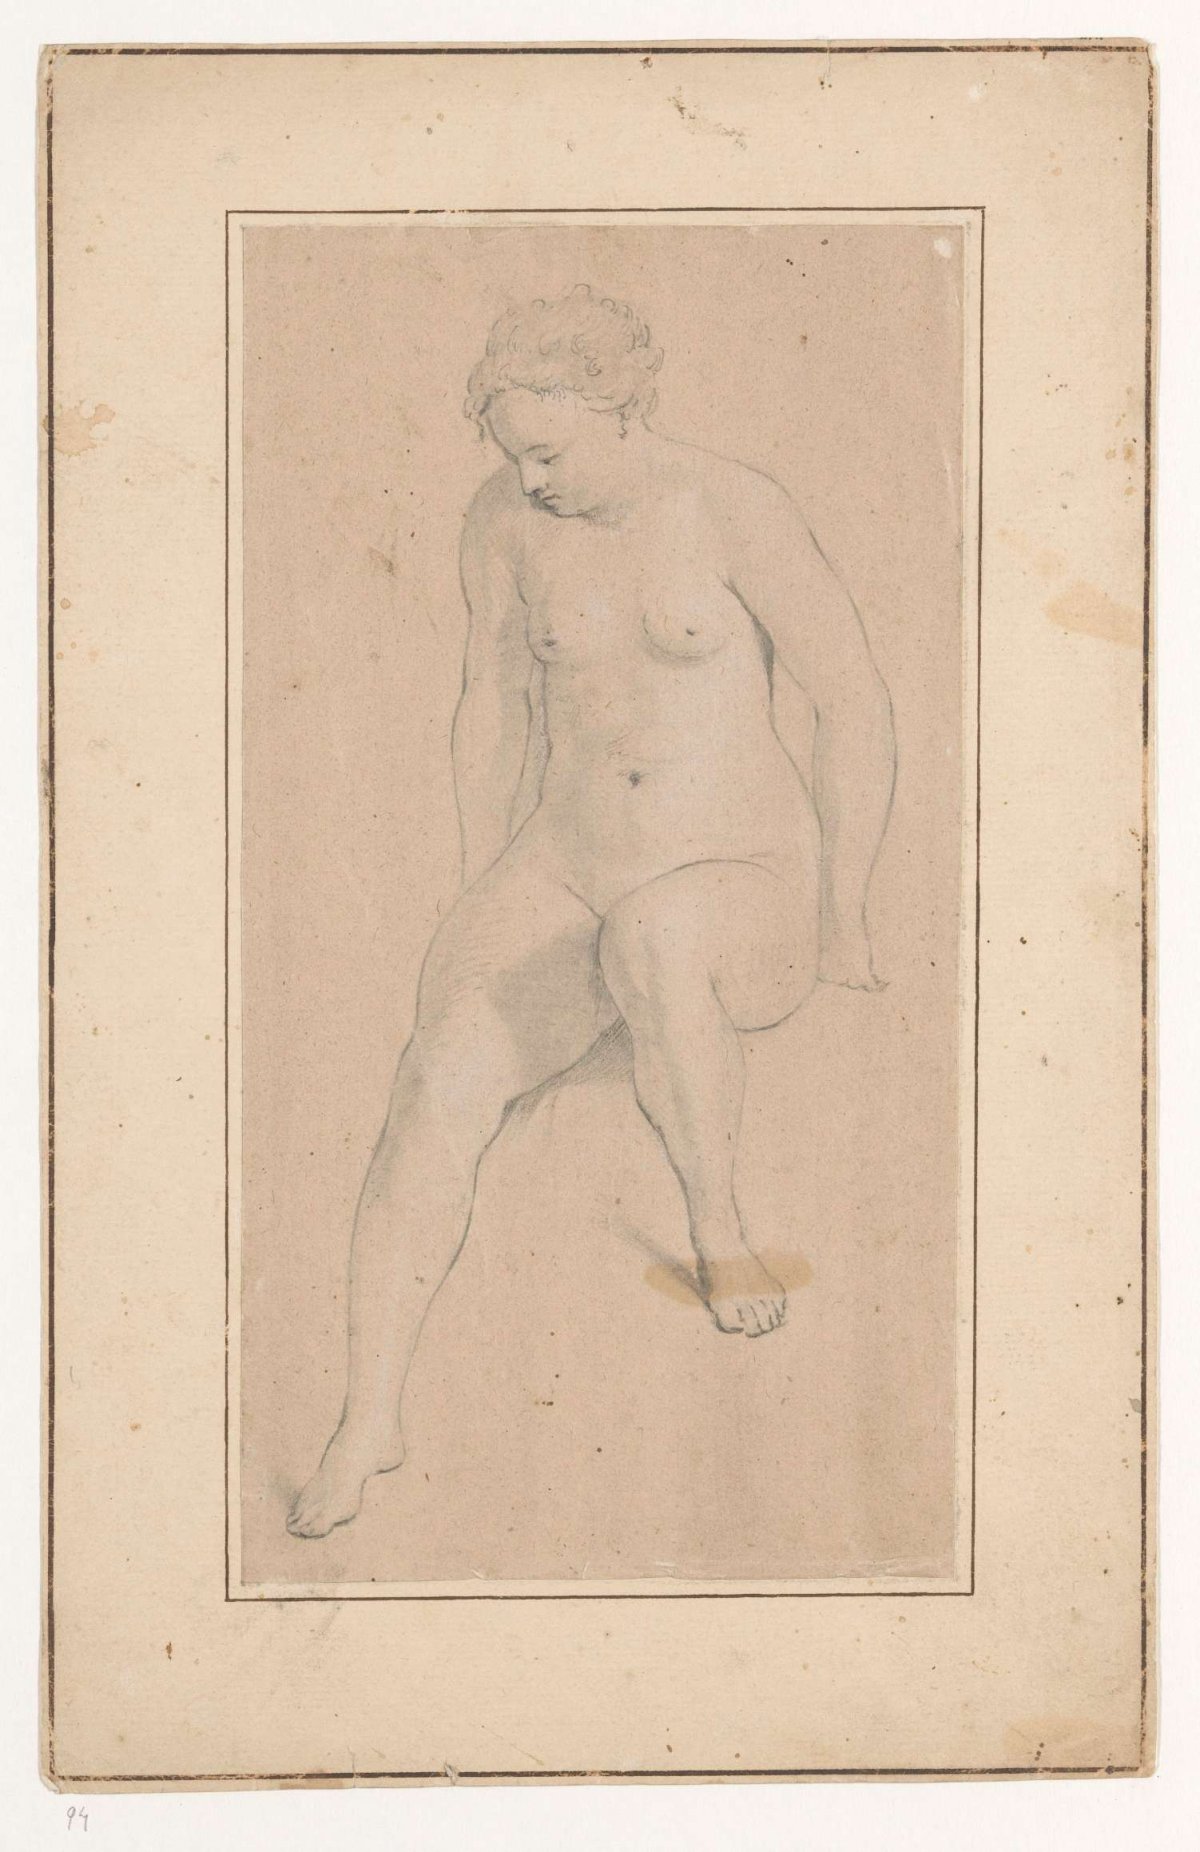 Seated Female Nude, Jan Brandes, 1787 - 1808